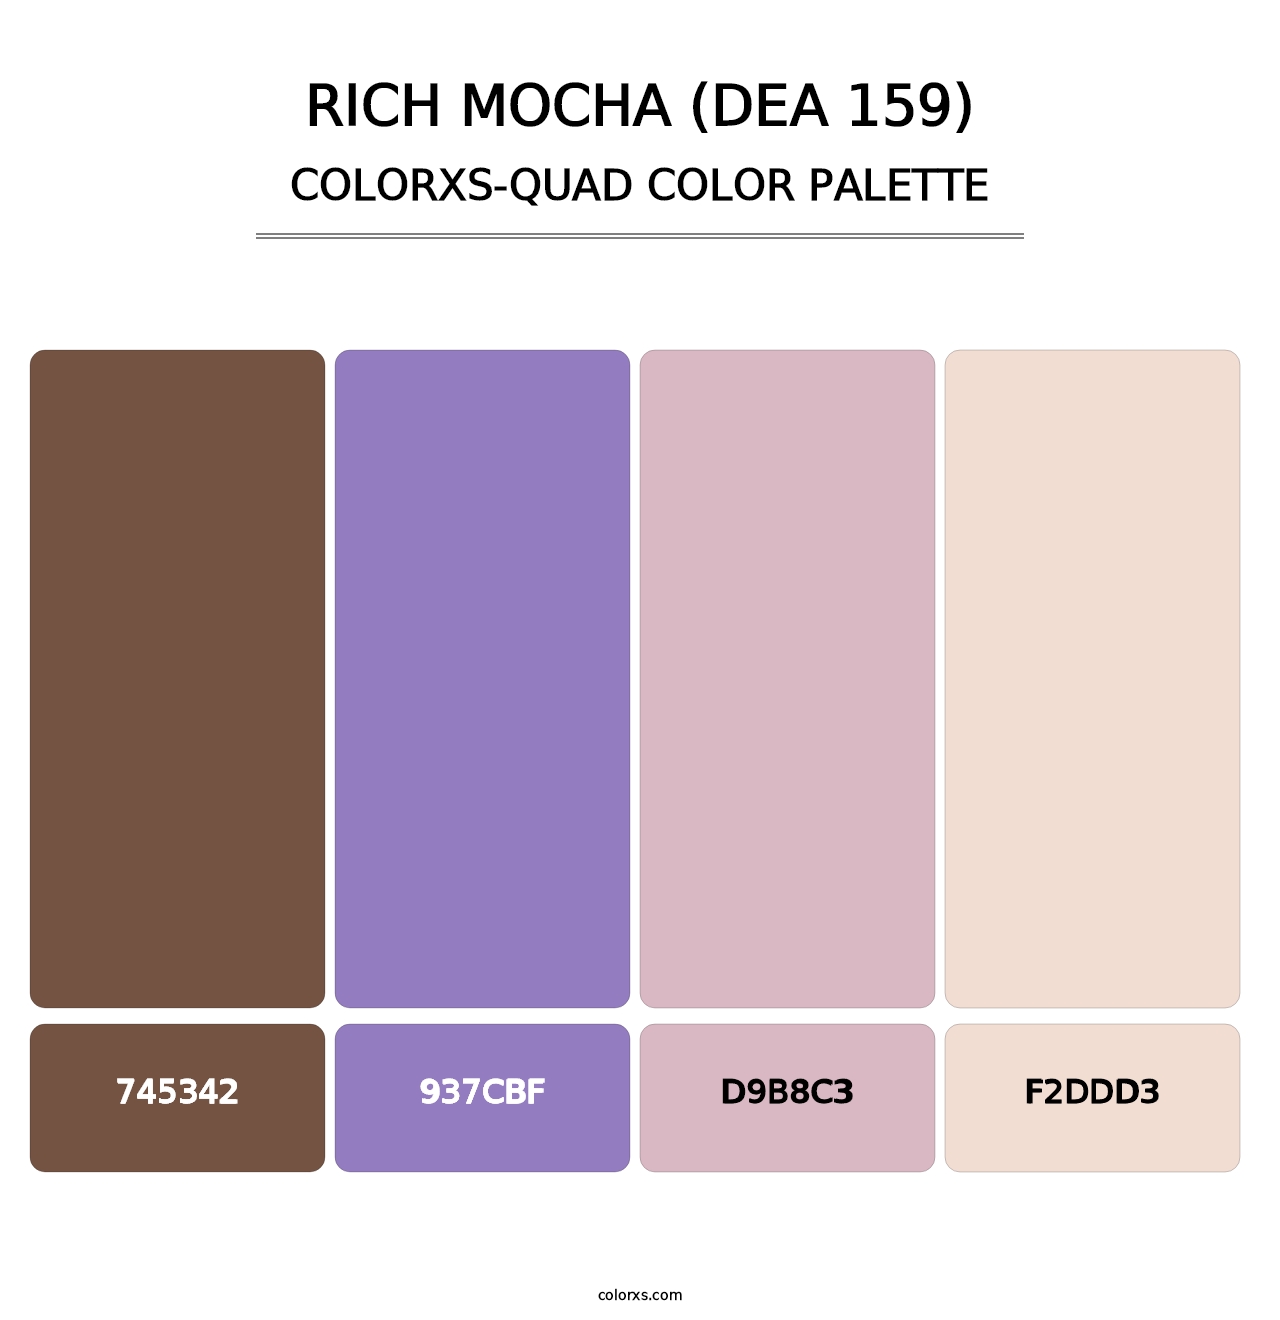 Rich Mocha (DEA 159) - Colorxs Quad Palette